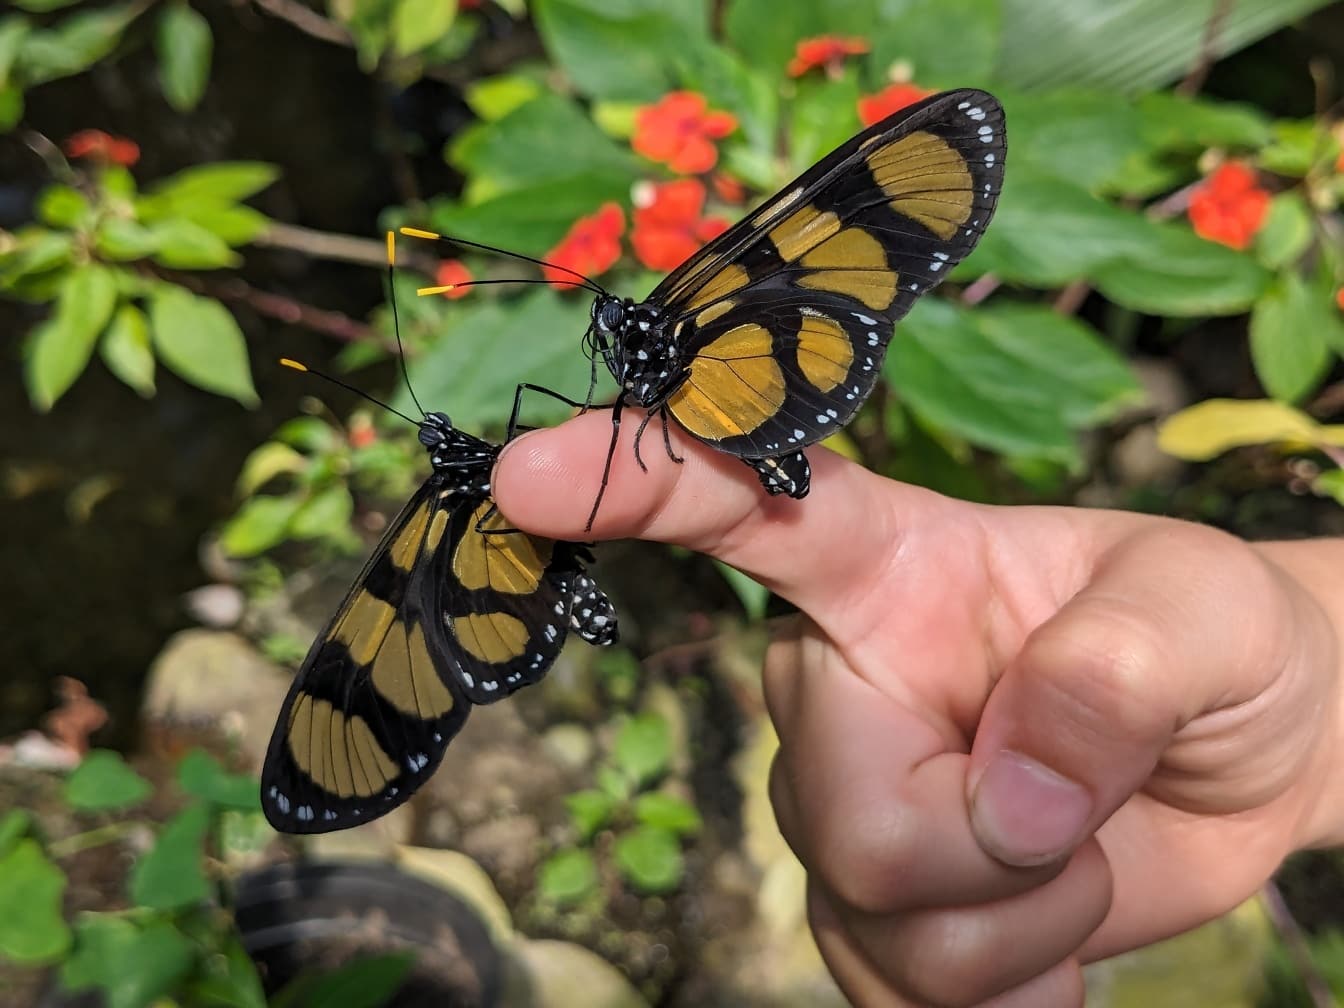 Duas borboletas temisto amareladas-pretas no dedo de uma pessoa (Methona themisto)